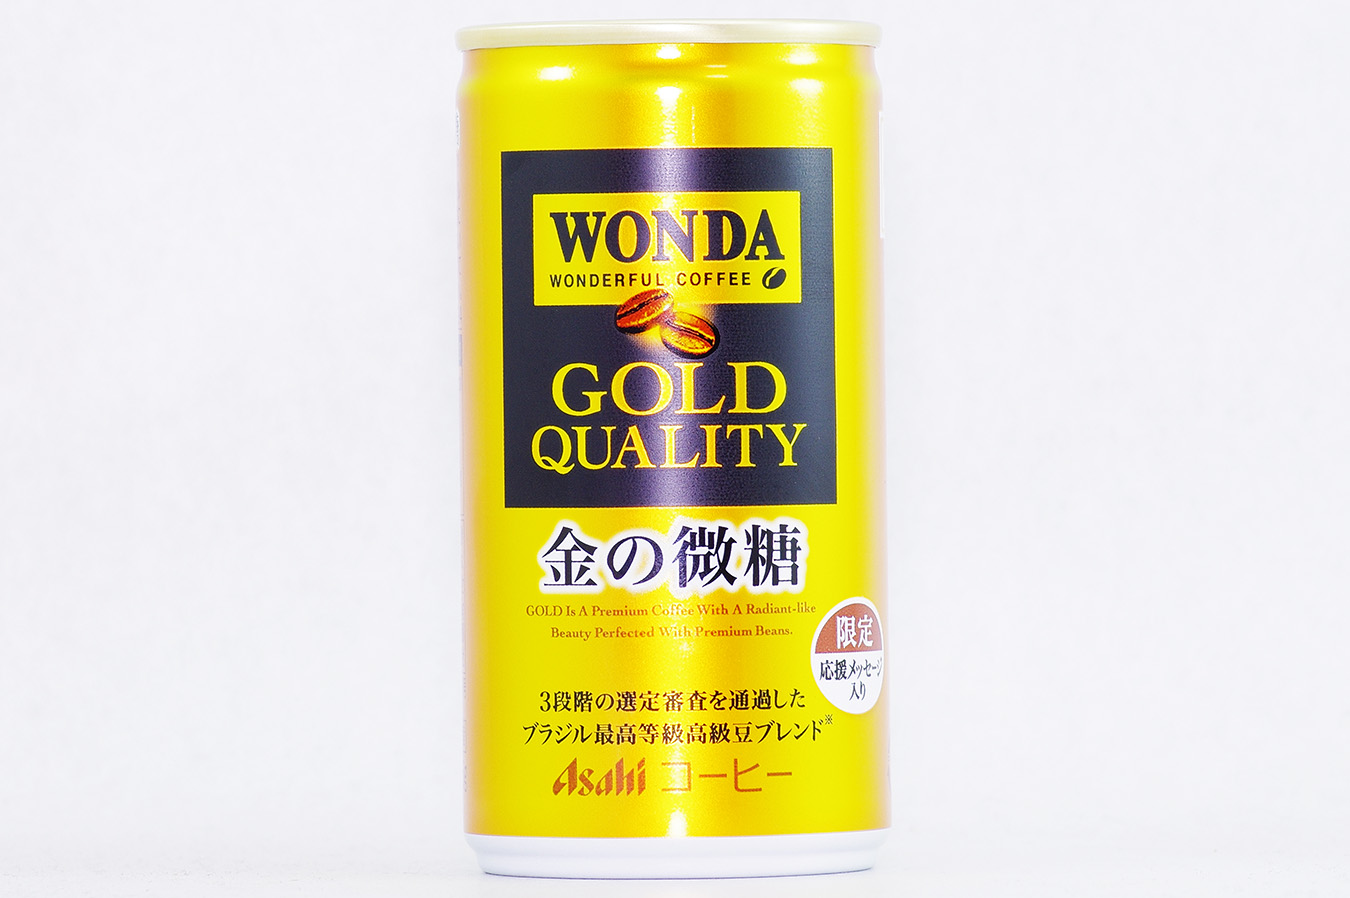 WONDA 金の微糖 20周年限定デザイン缶 表面 2017年1月